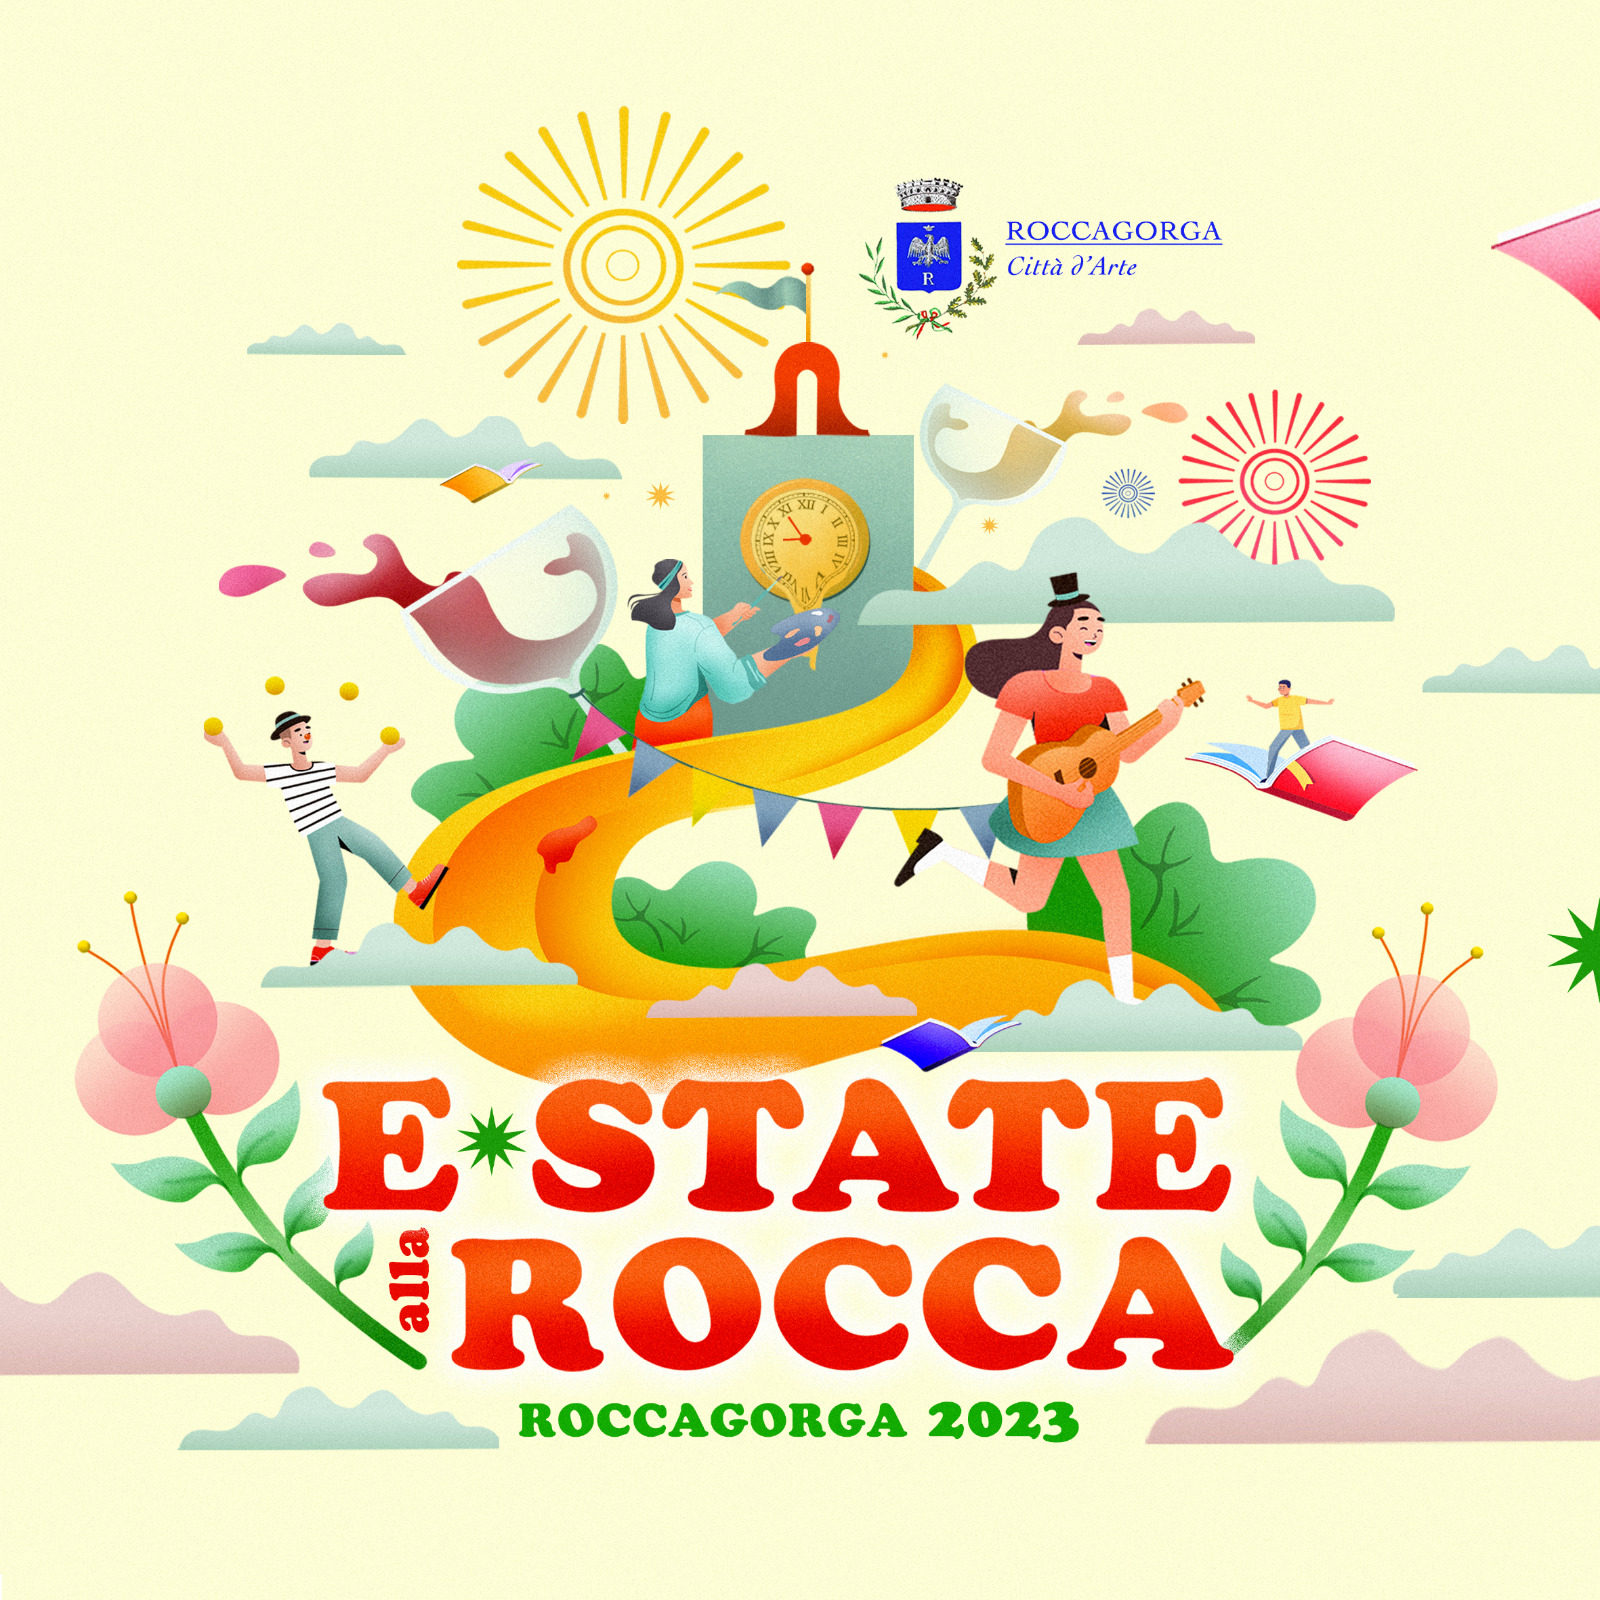 Roccagorga: E-State alla Rocca 2023 @ Roccagorga (LT)